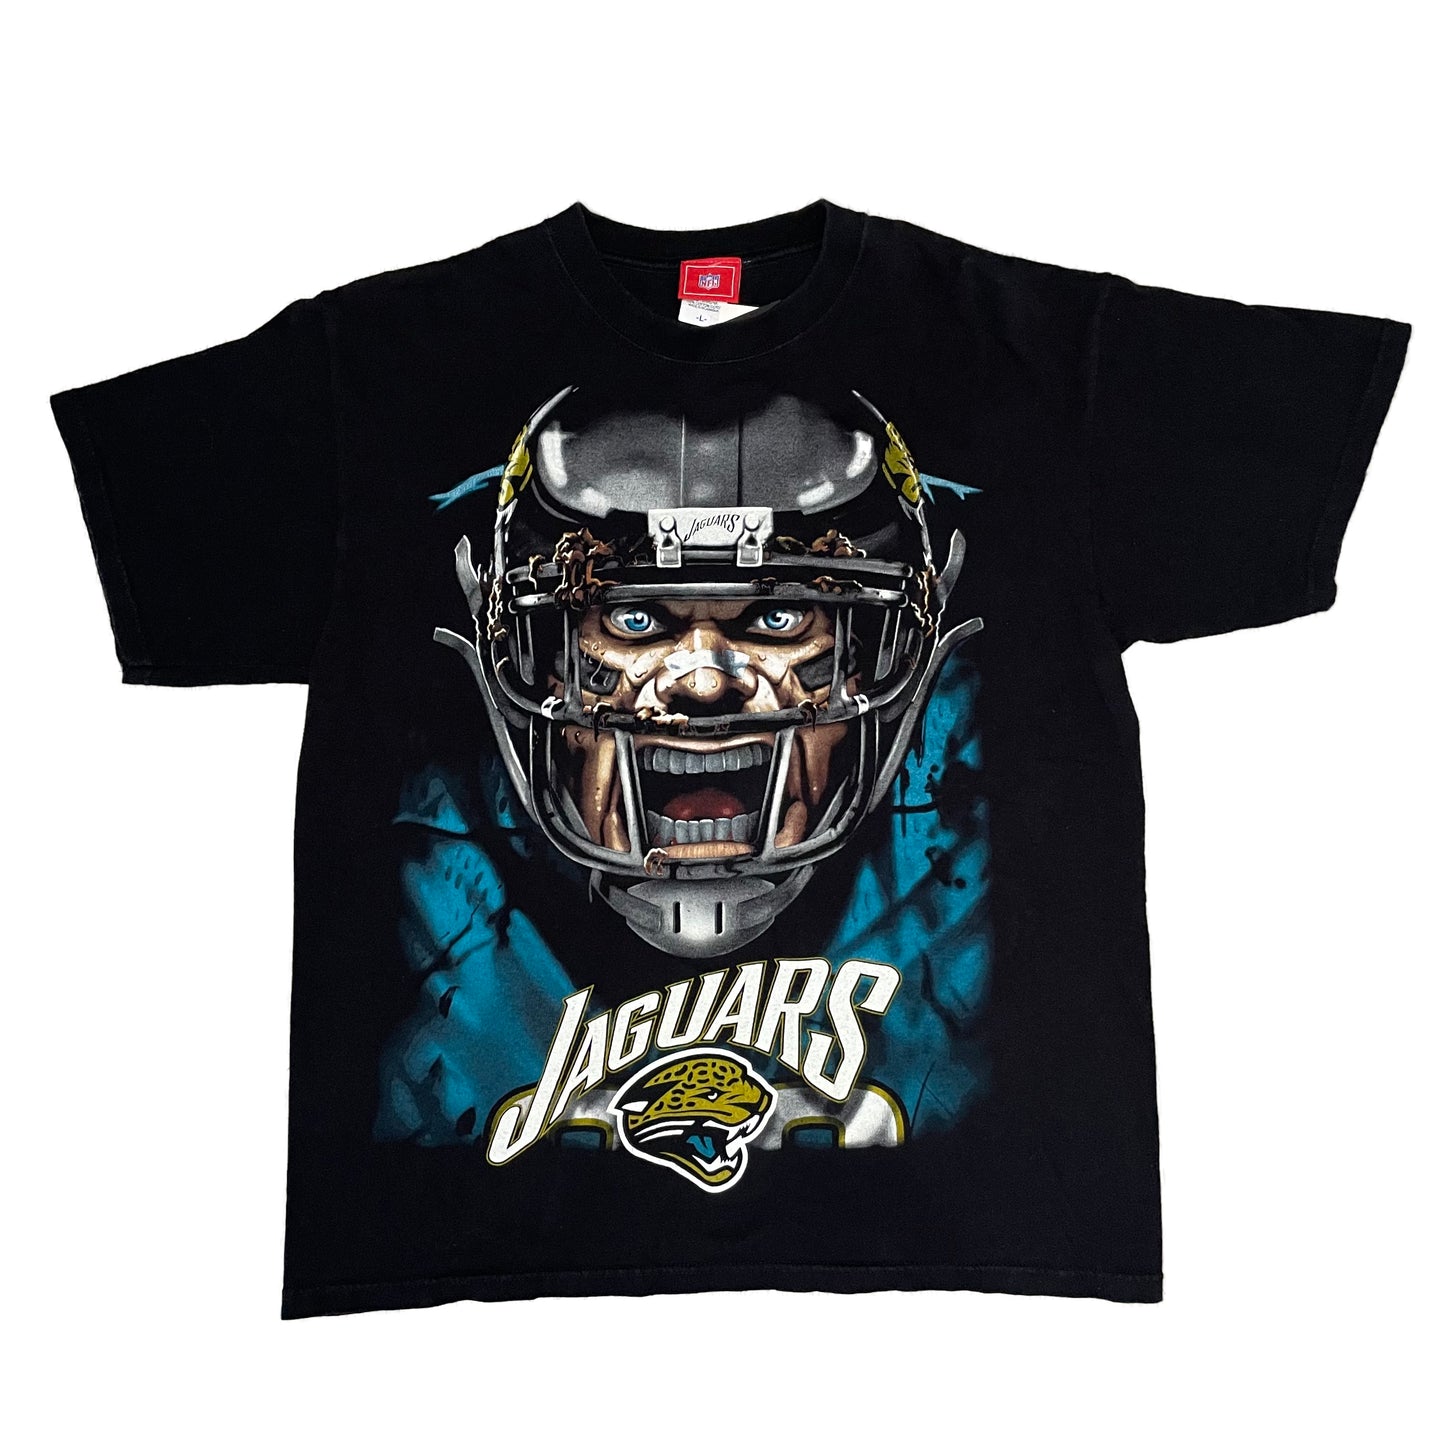 Jacksonville Jaguars big head shirt